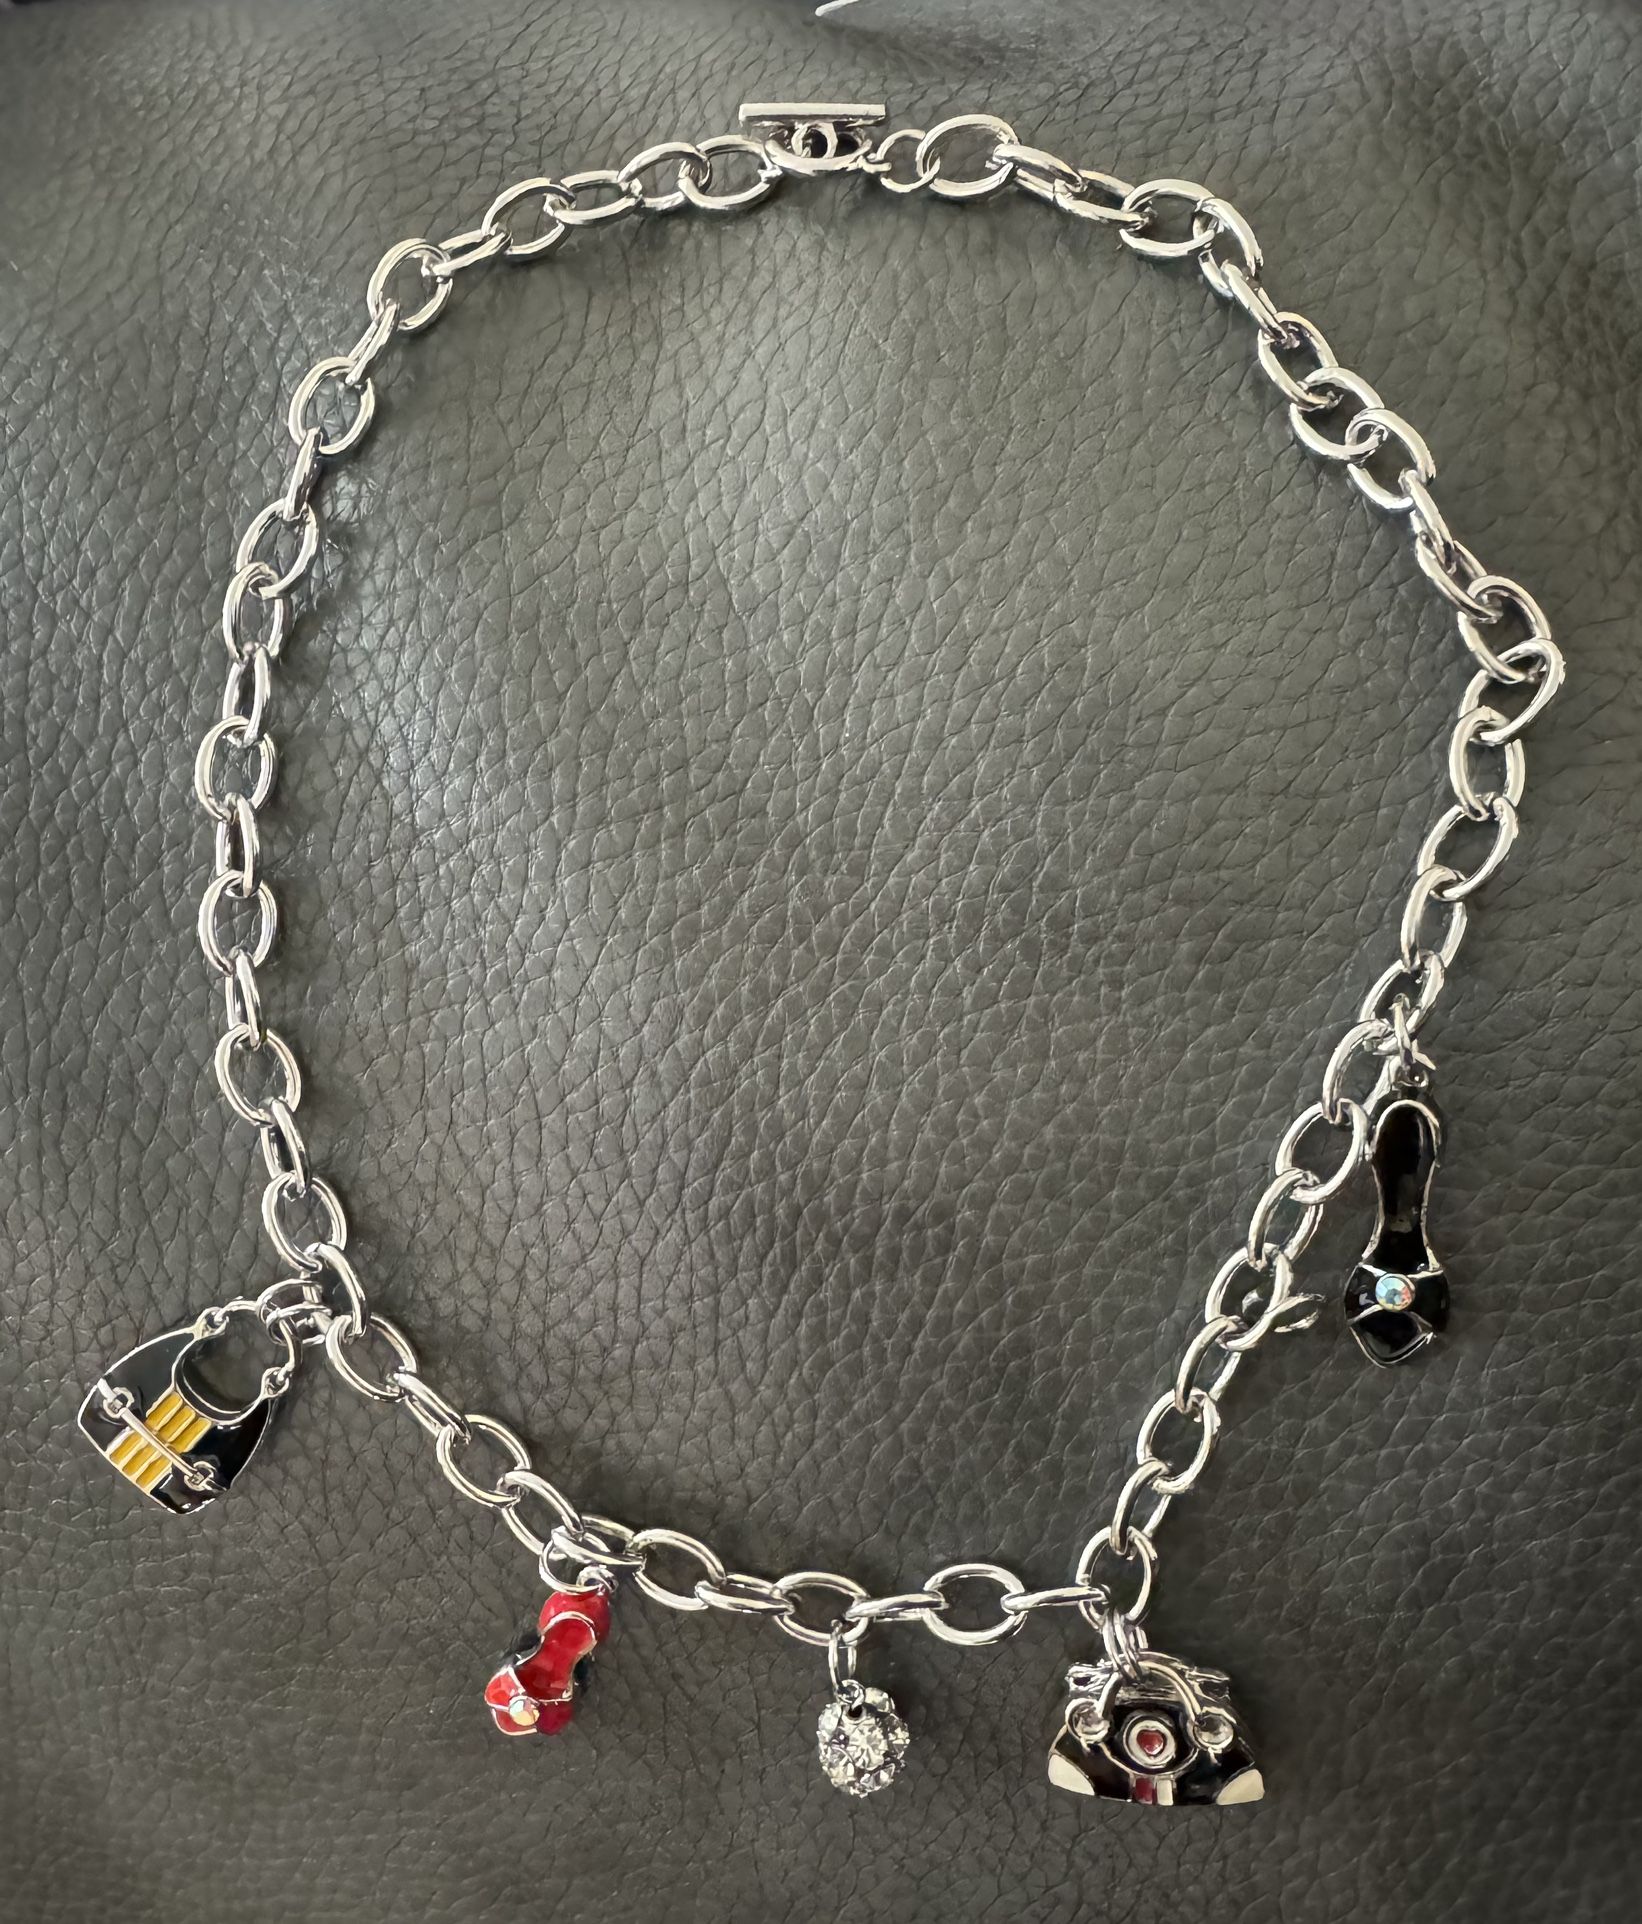 Fashion Jewelry/ Charm Necklace